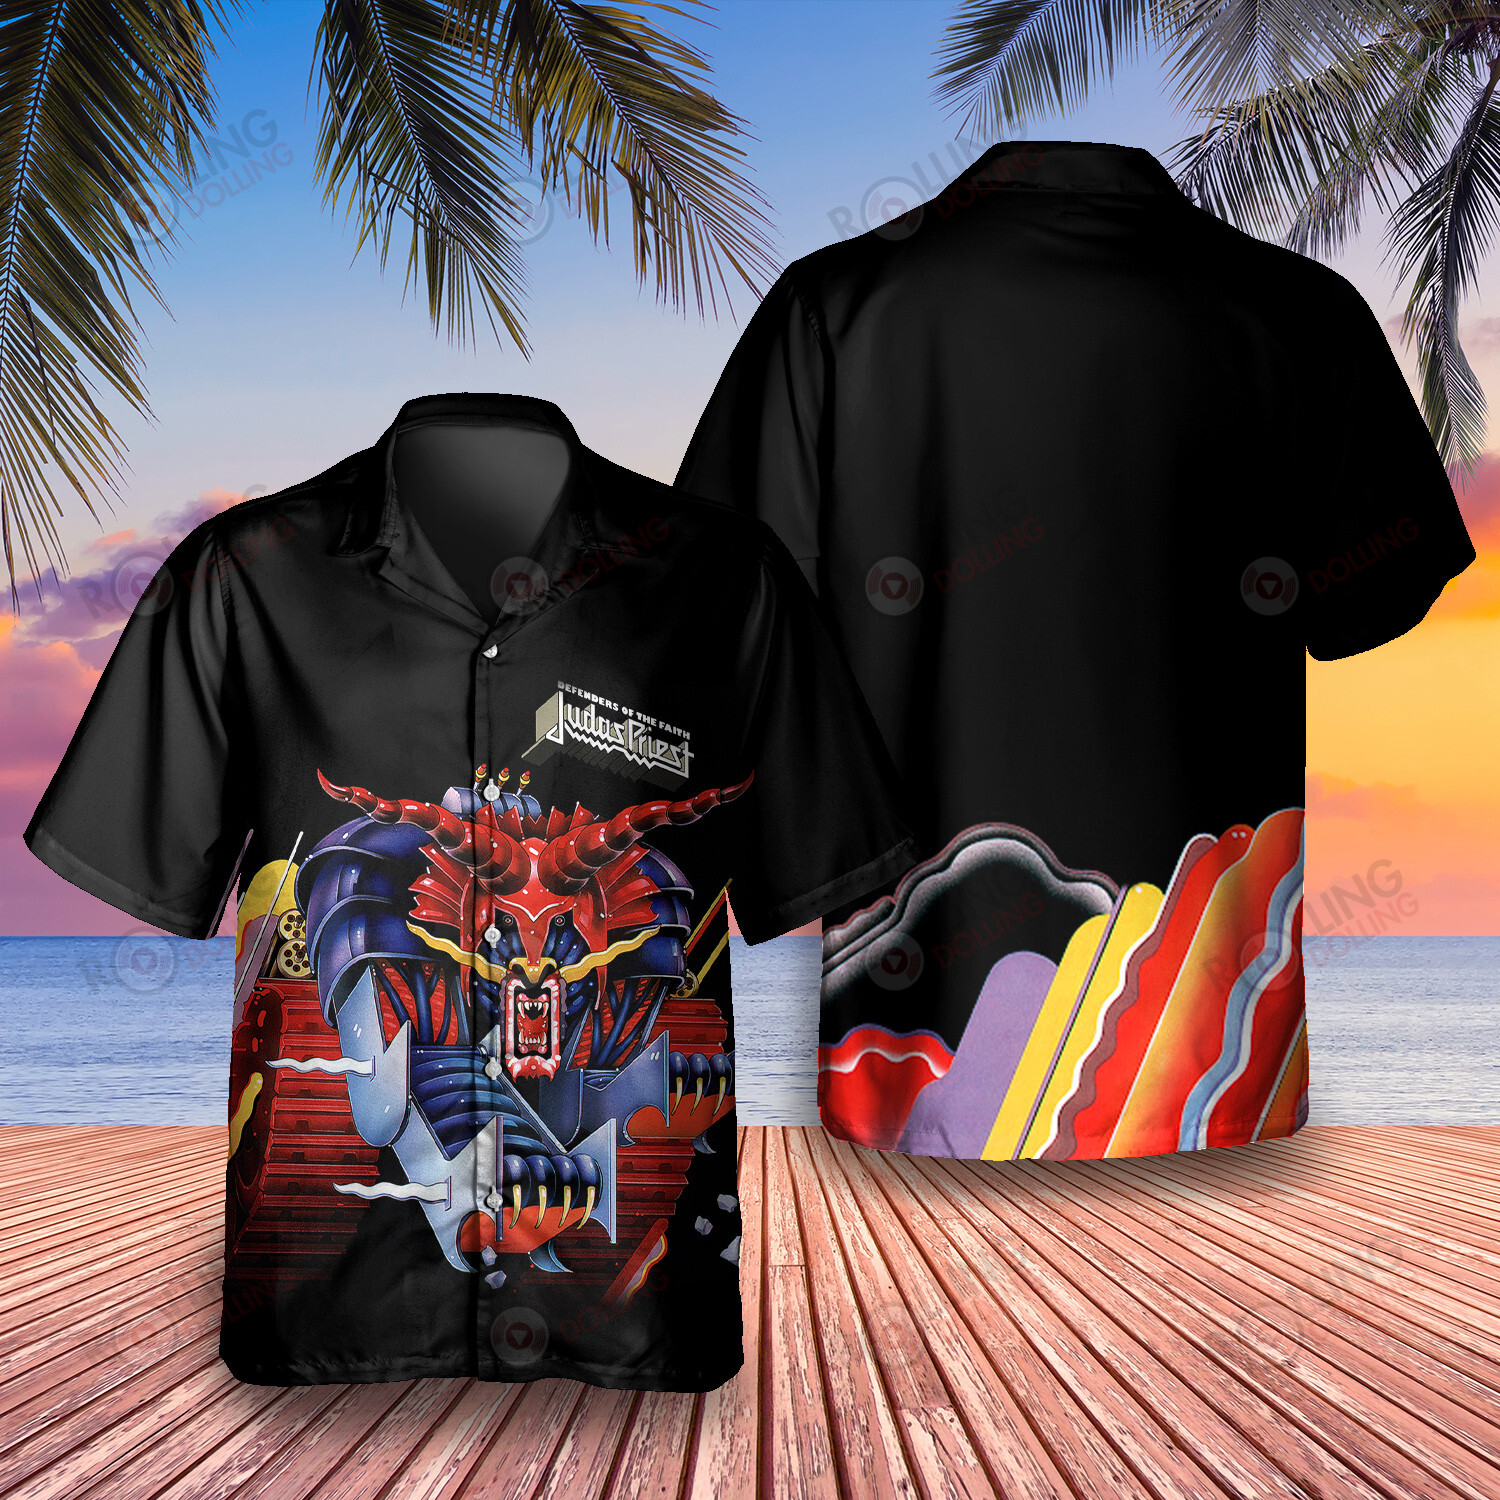 HOT Judas Priest Defenders of the Faith Album Tropical Shirt2